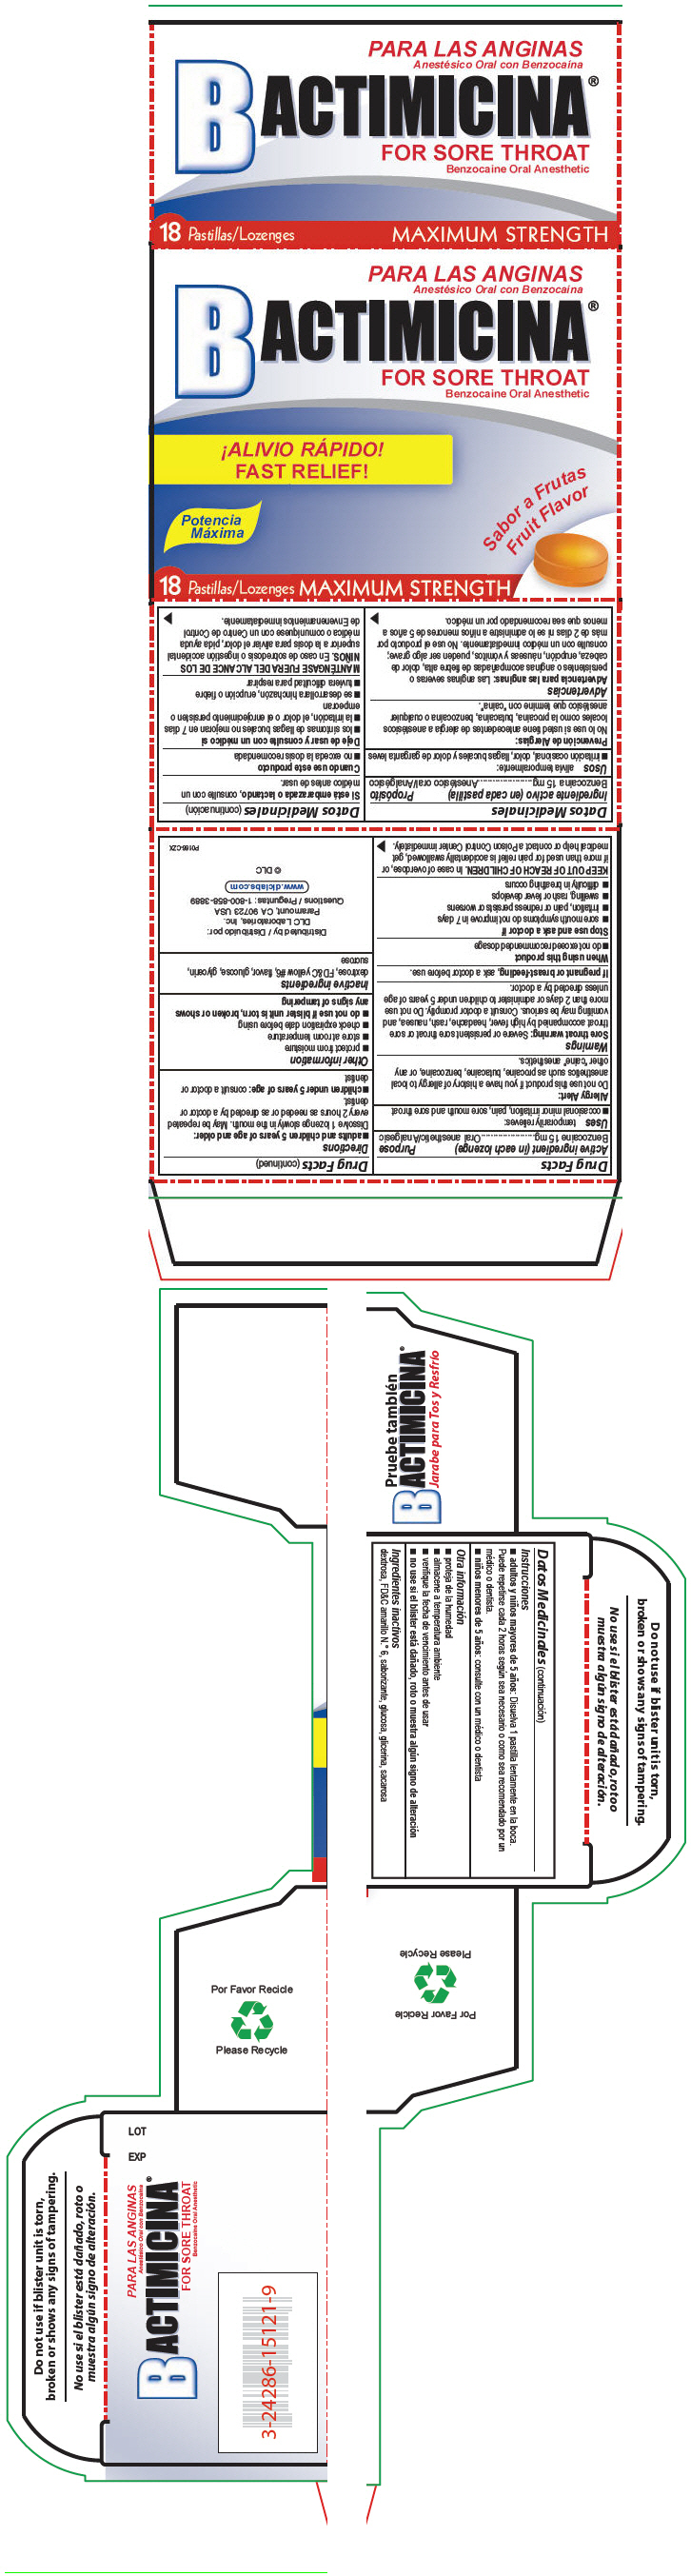 PRINCIPAL DISPLAY PANEL - 18 Lozenge Carton